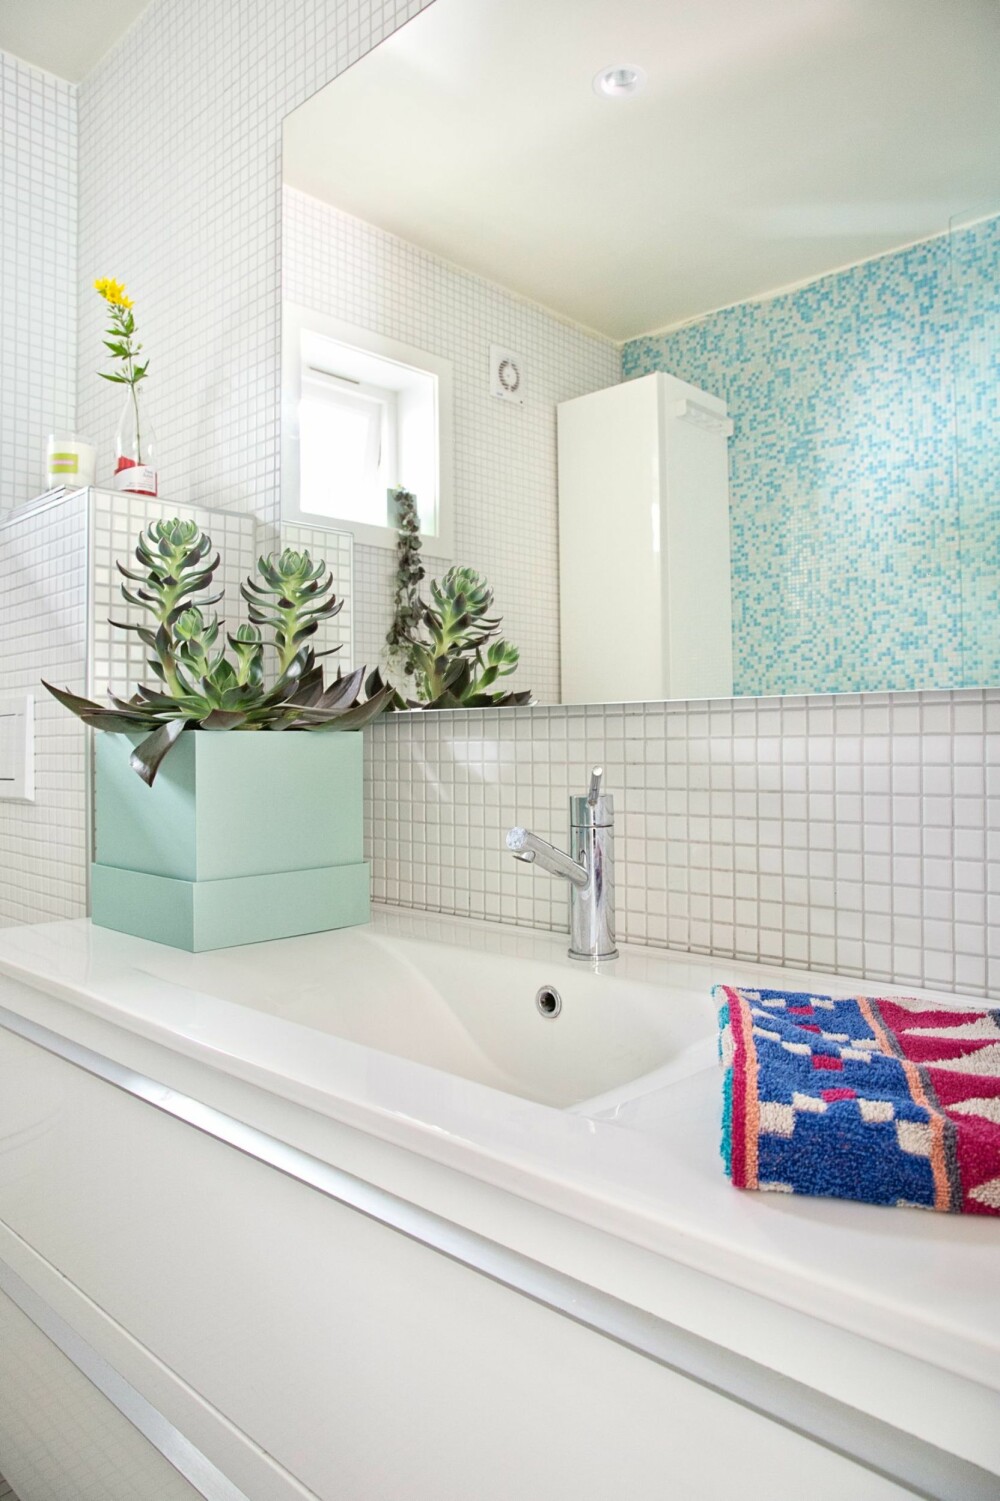 BADET: De nydelige mosaikkflisene i blått og hvitt på badet var det første Sarah plukket ut til det nye huset.